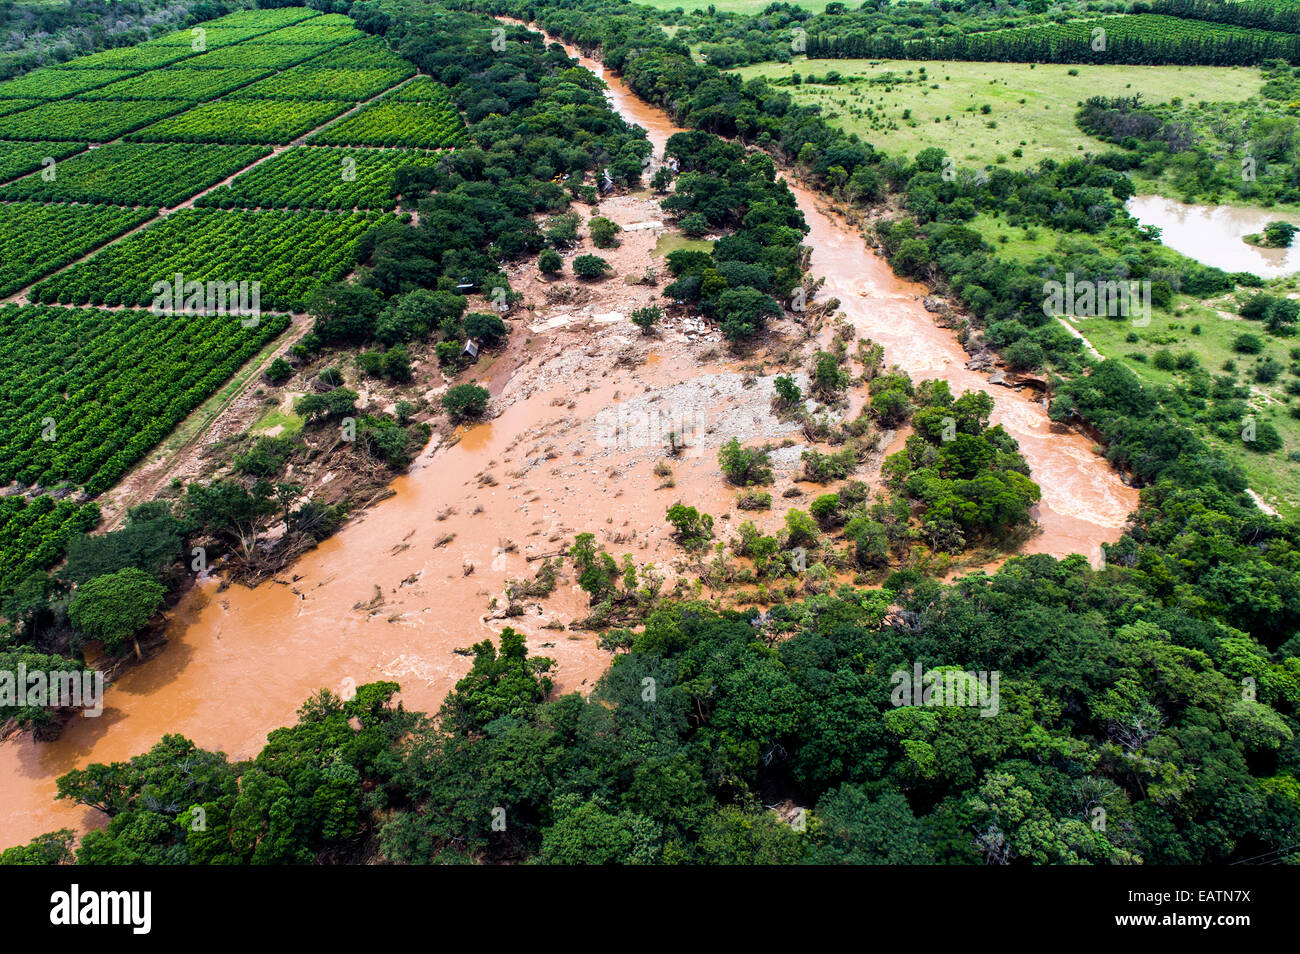 Un río inundado restrictivamente misses destruyendo cosechas agrícolas. Foto de stock